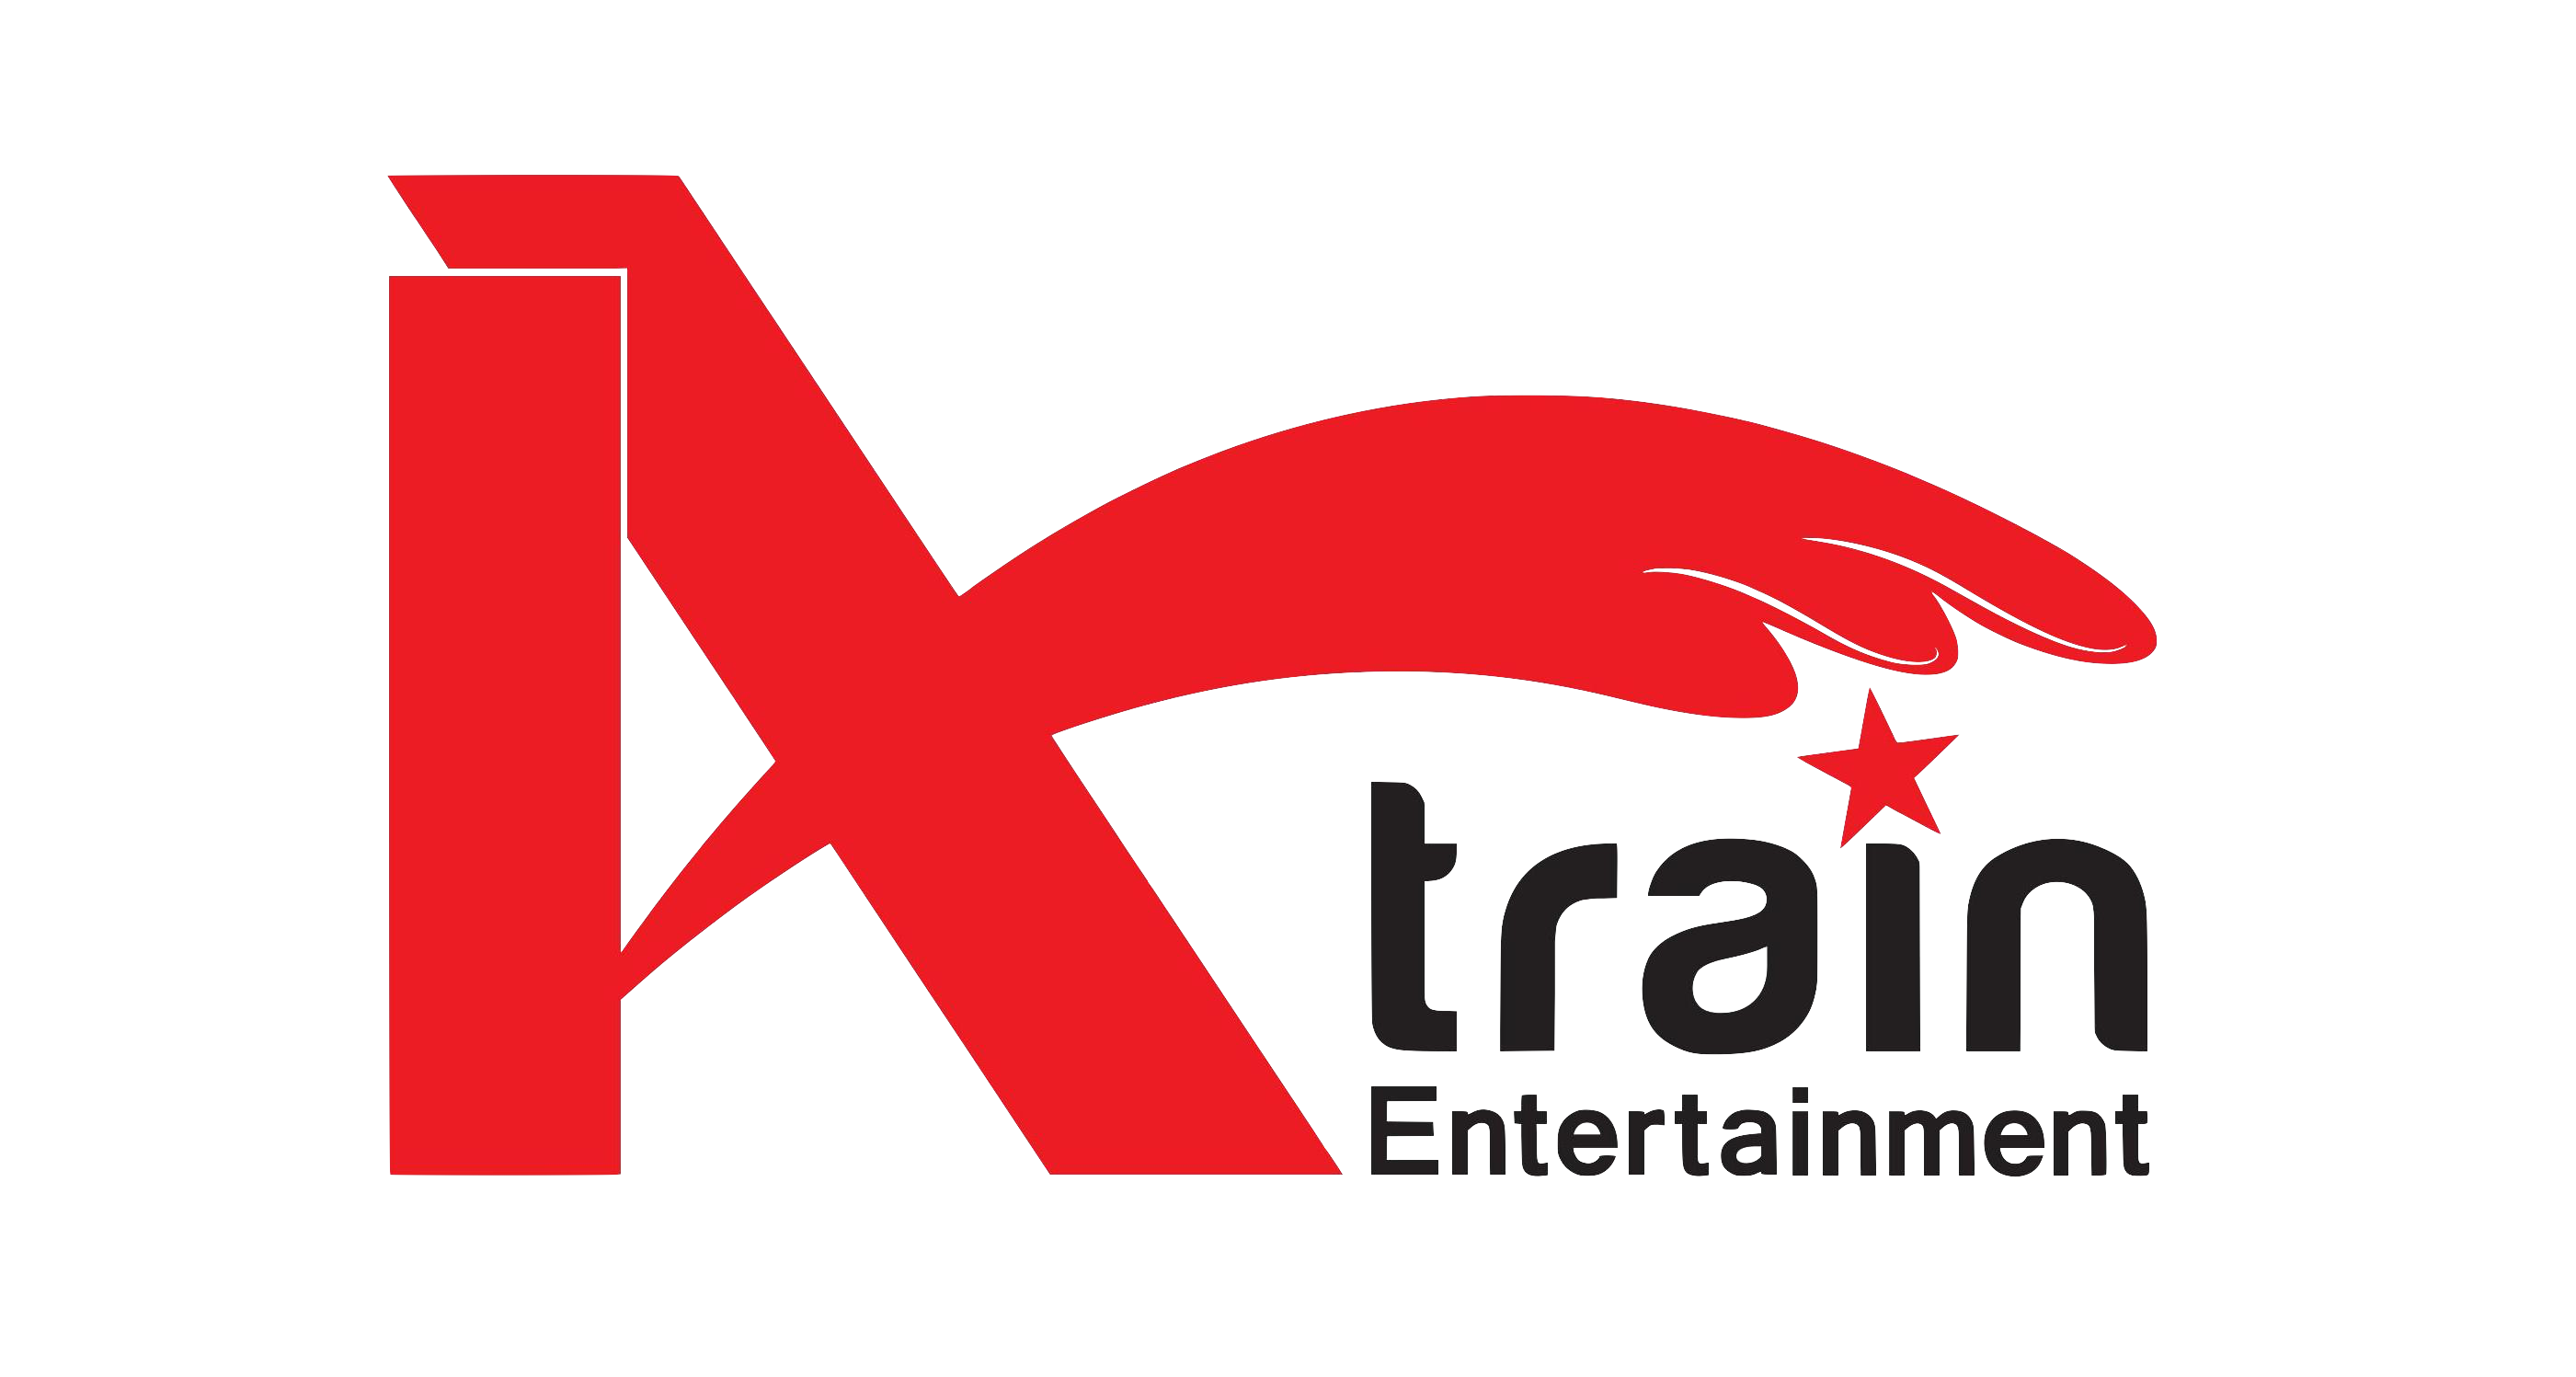 A-train Entertainment